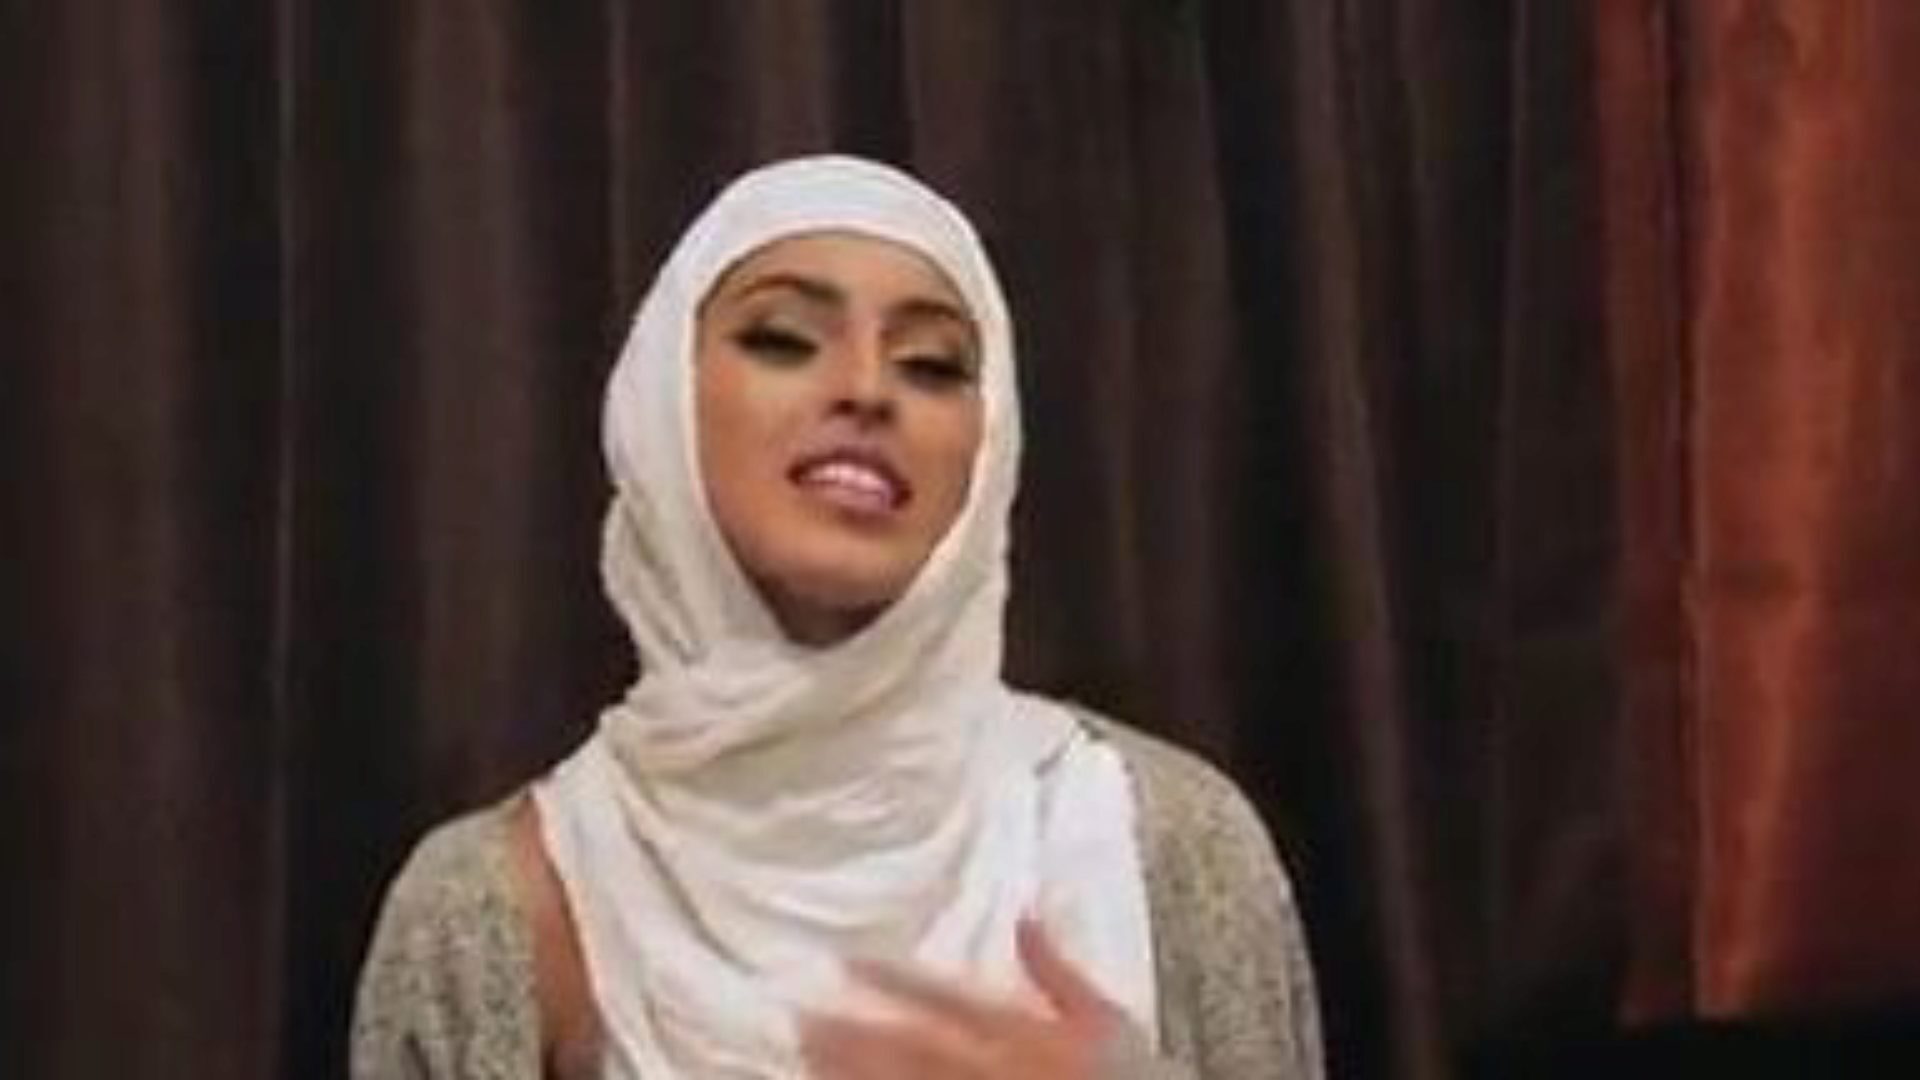 schüchterne unerfahrene Mädchen ficken in ihren Hijabs: free porn 5e schau unerfahrene Mädchen ficken in ihrer Hijabs-Folge auf xhamster - dem ultimativen Archiv von kostenlosen xnxx für kostenlose & bel ami Hardcore-Porno-Tube-Videos